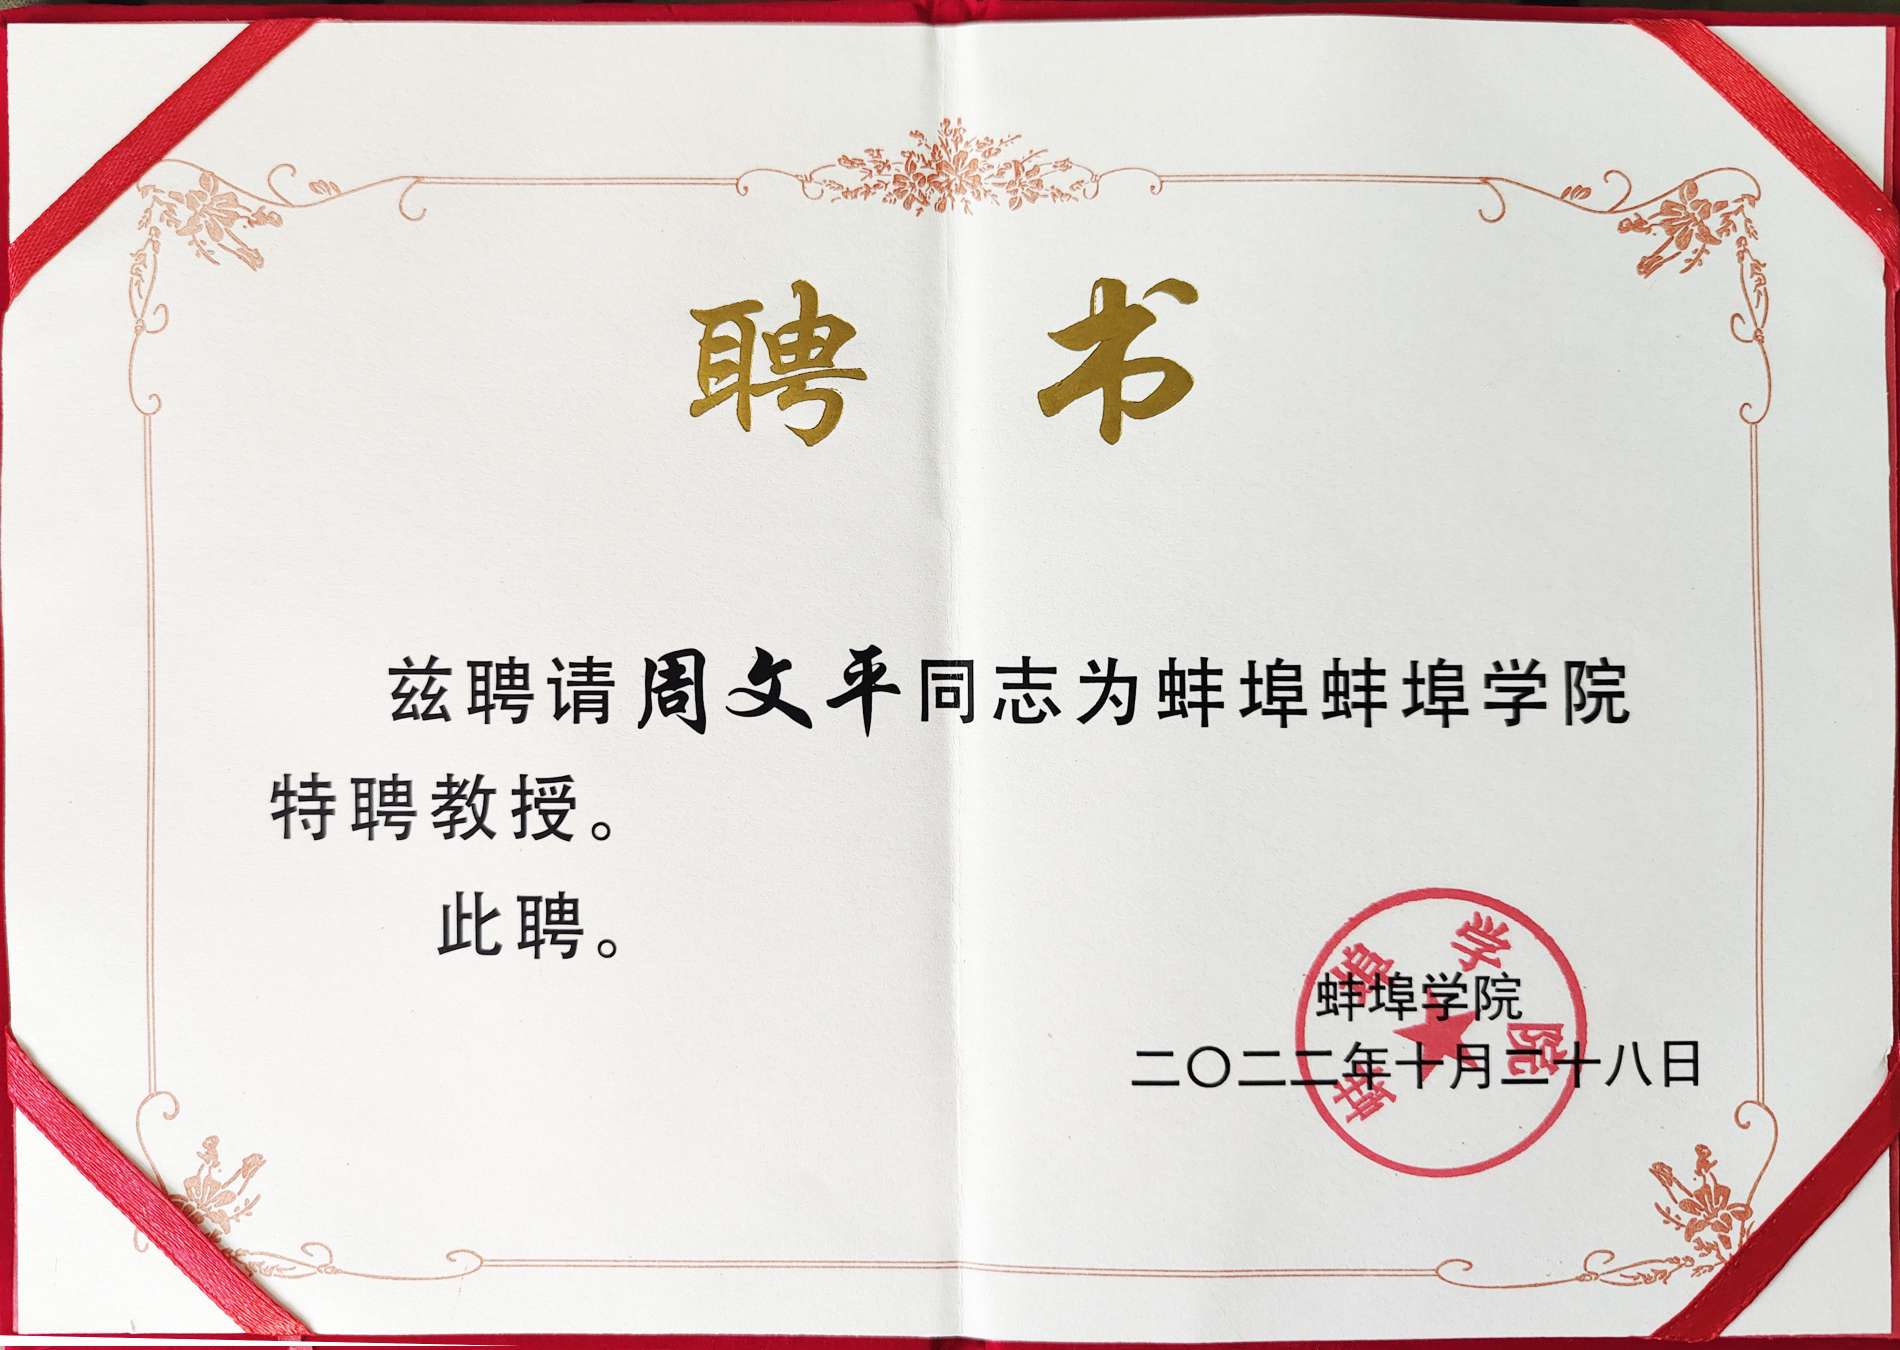 ¡La Universidad de Bengbu otorgó a Long Hua Zhou Wenping el certificado honorífico de "Profesor Distinguido"!